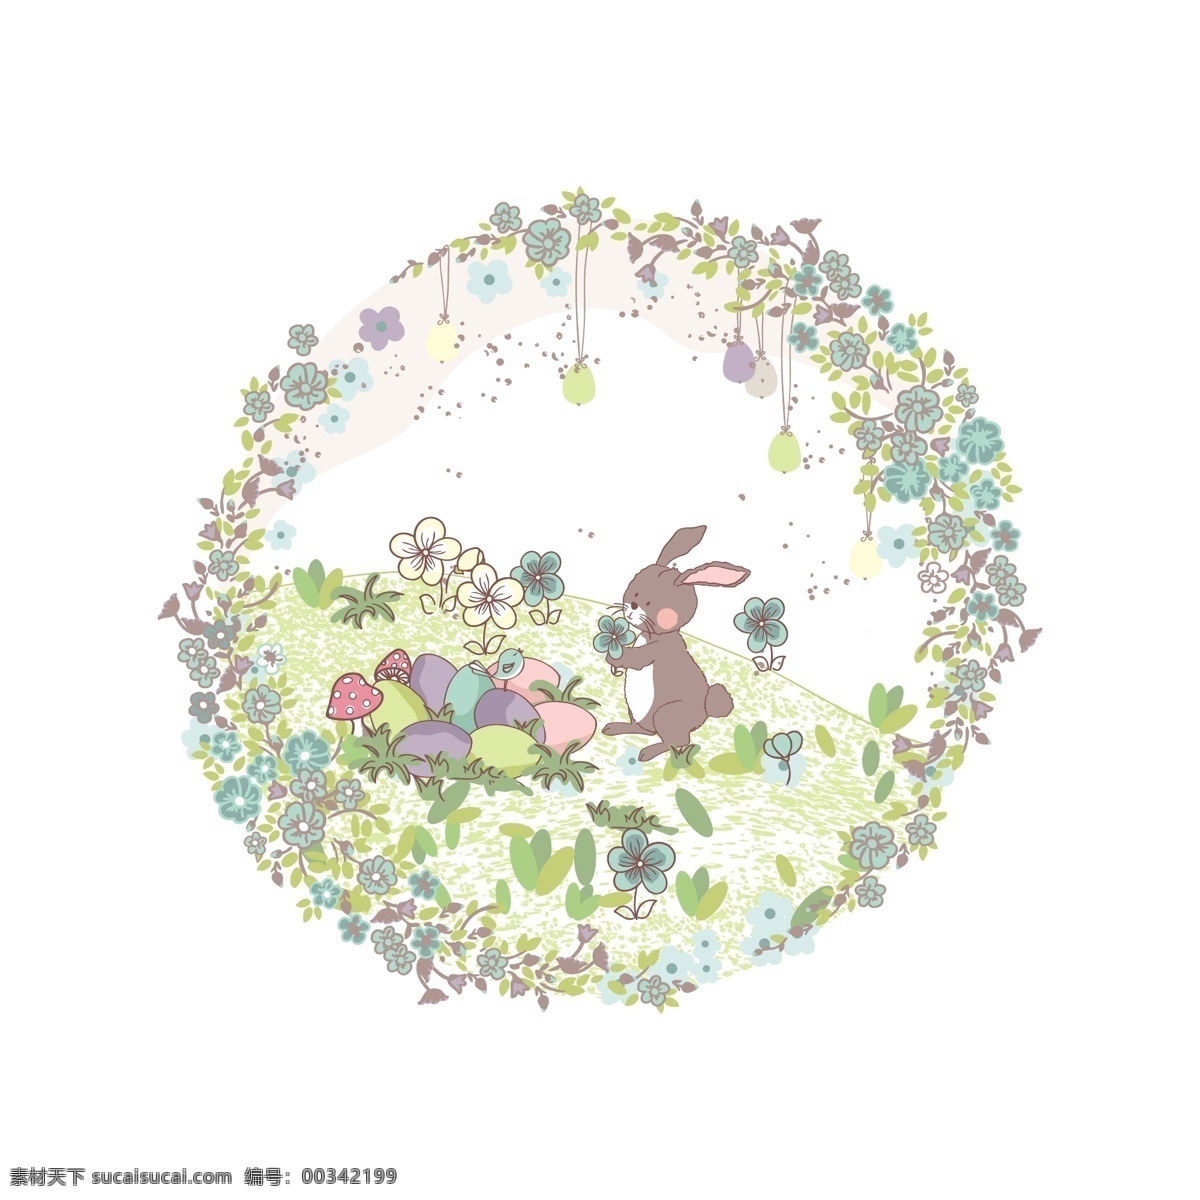 矢量 卡通 插画 鸡蛋 蘑菇 花卉 illustrator 花瓣 兔 白色